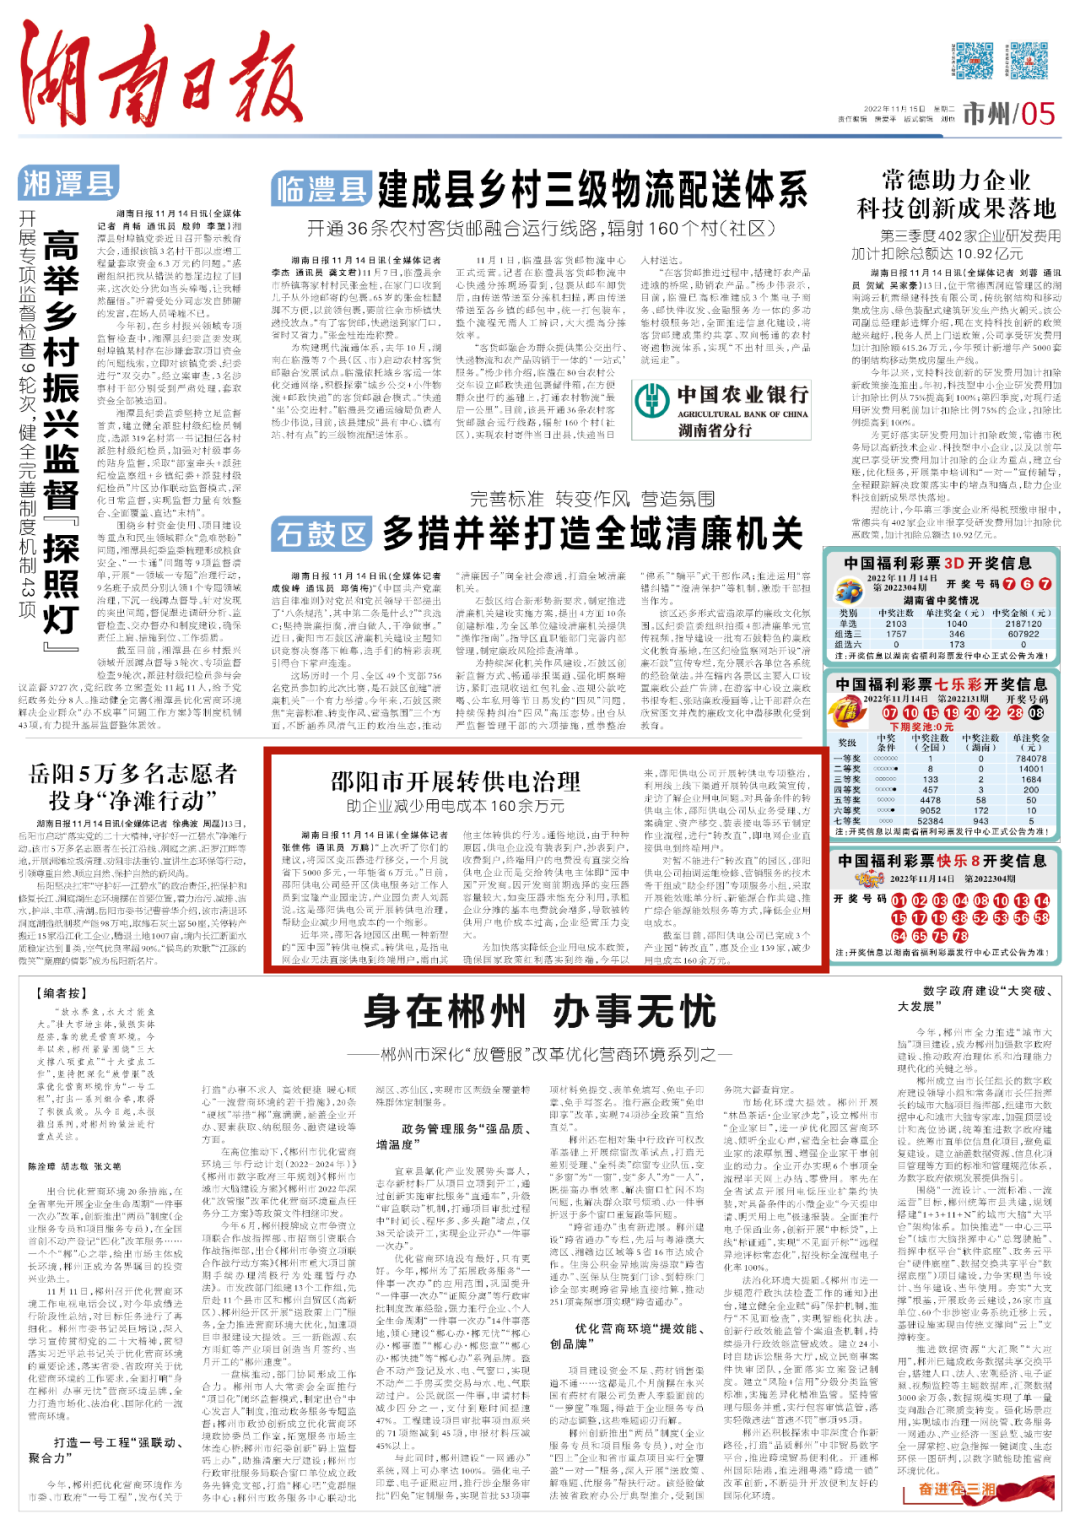 邵阳市开展转供电治理 助企业减少用电成本160余万元